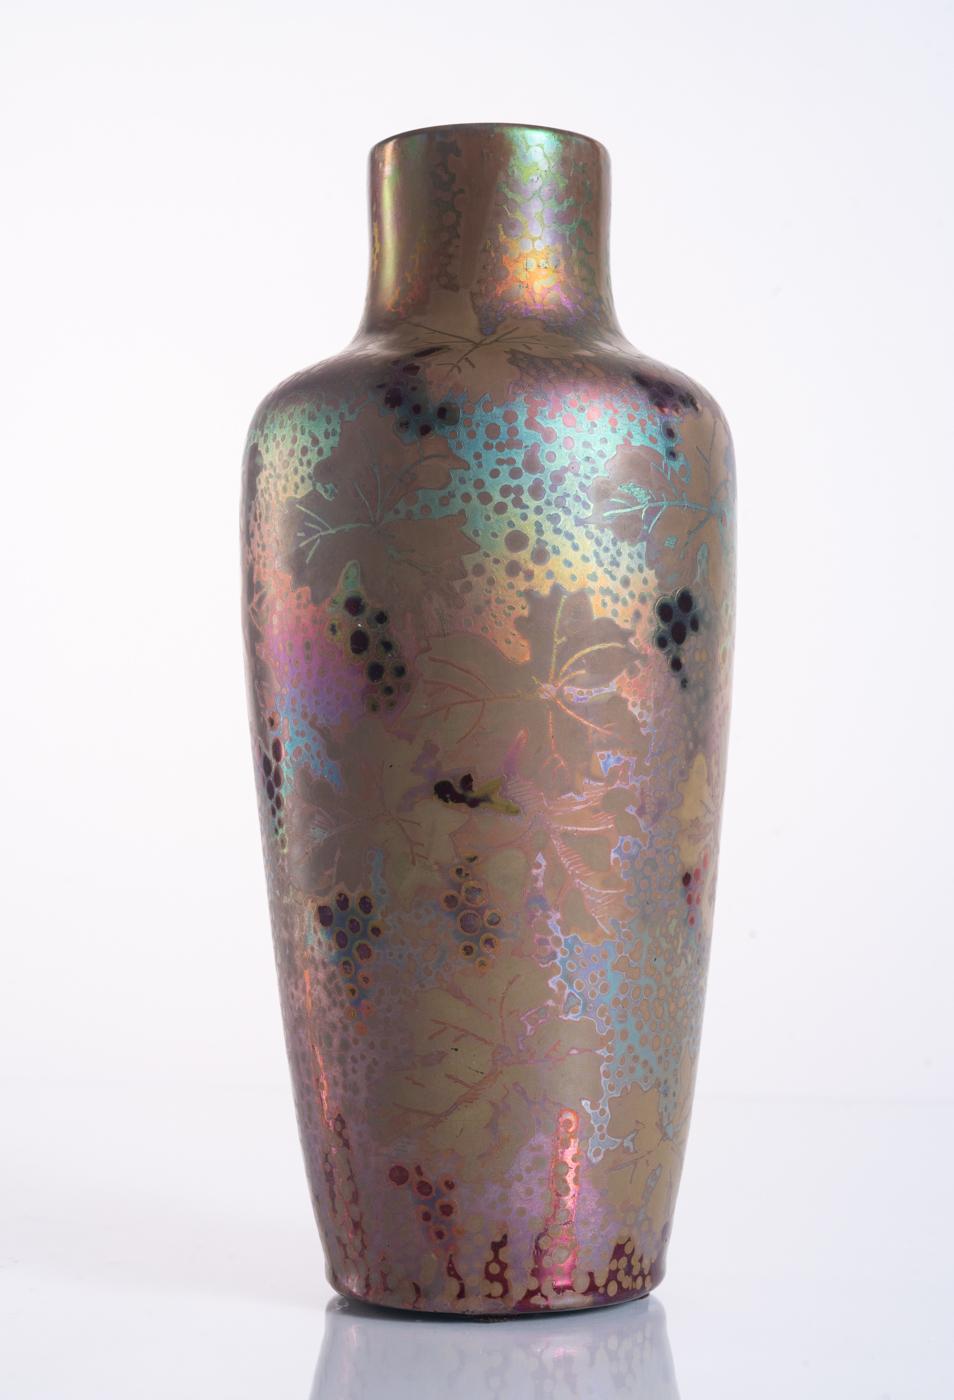 Vase aus Keramik mit blauer und grüner Metallglanzglasur des Meisters des Schillerns Clement Massier, mit Trauben und Blättern in tiefem Violett. Signiert MCM in der Basis, und nummeriert. 

Clément Massier war ein renommierter französischer